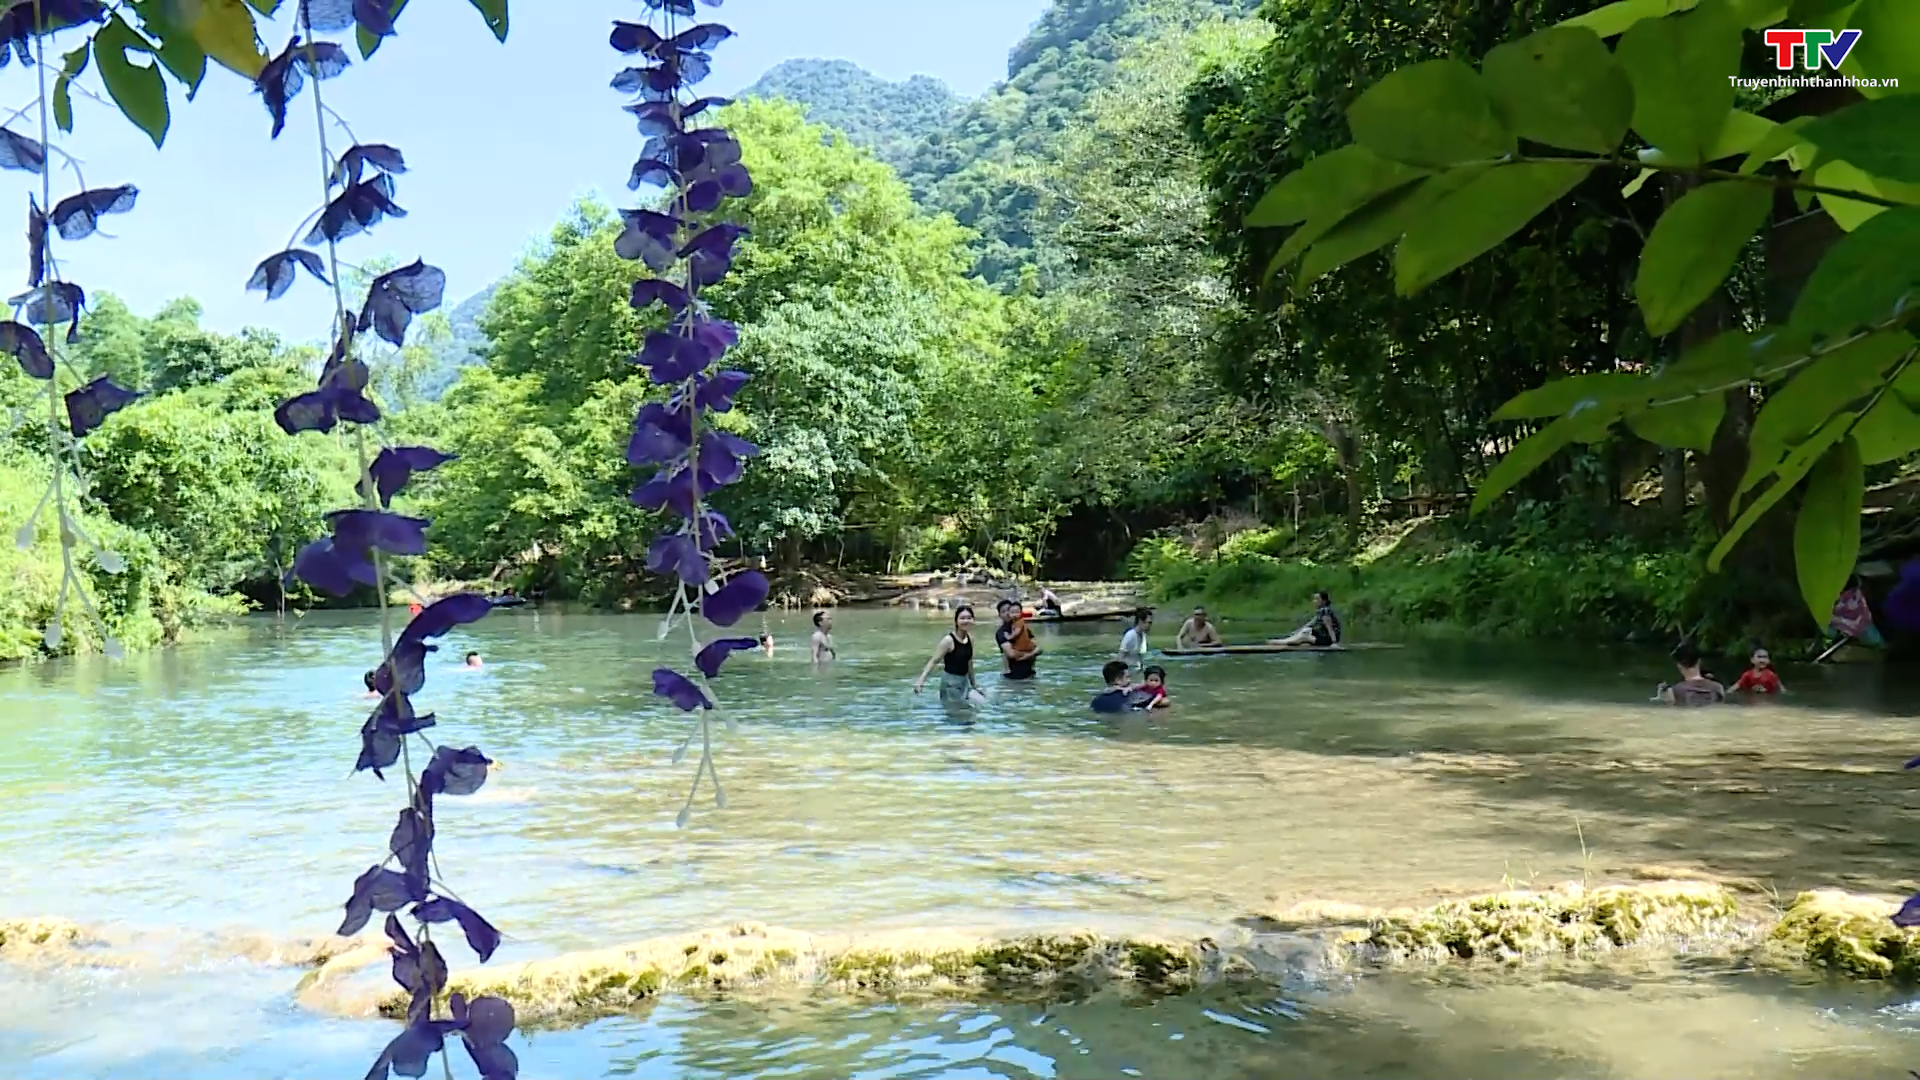 Sông, suối, thác - Món quà từ thiên nhiên hấp dẫn du khách - Ảnh 2.